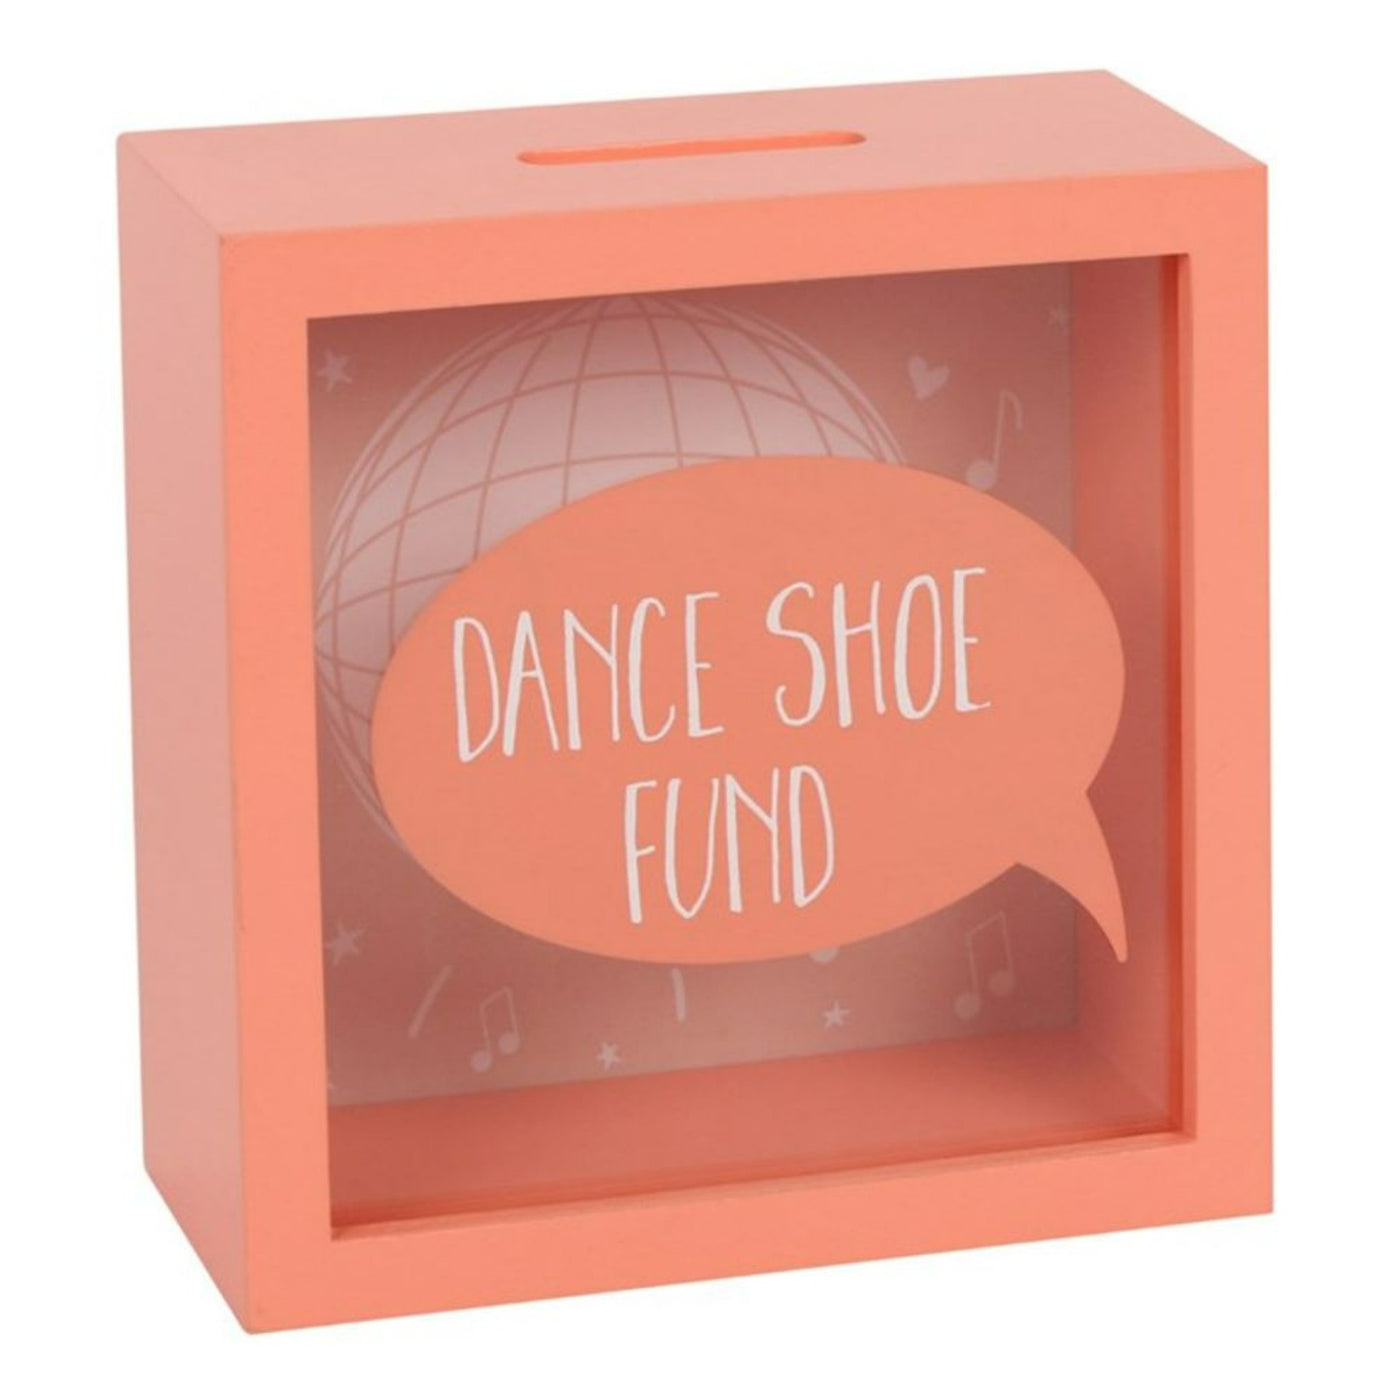 Dance Shoe Fund Orange Wooden Glass Money Box.